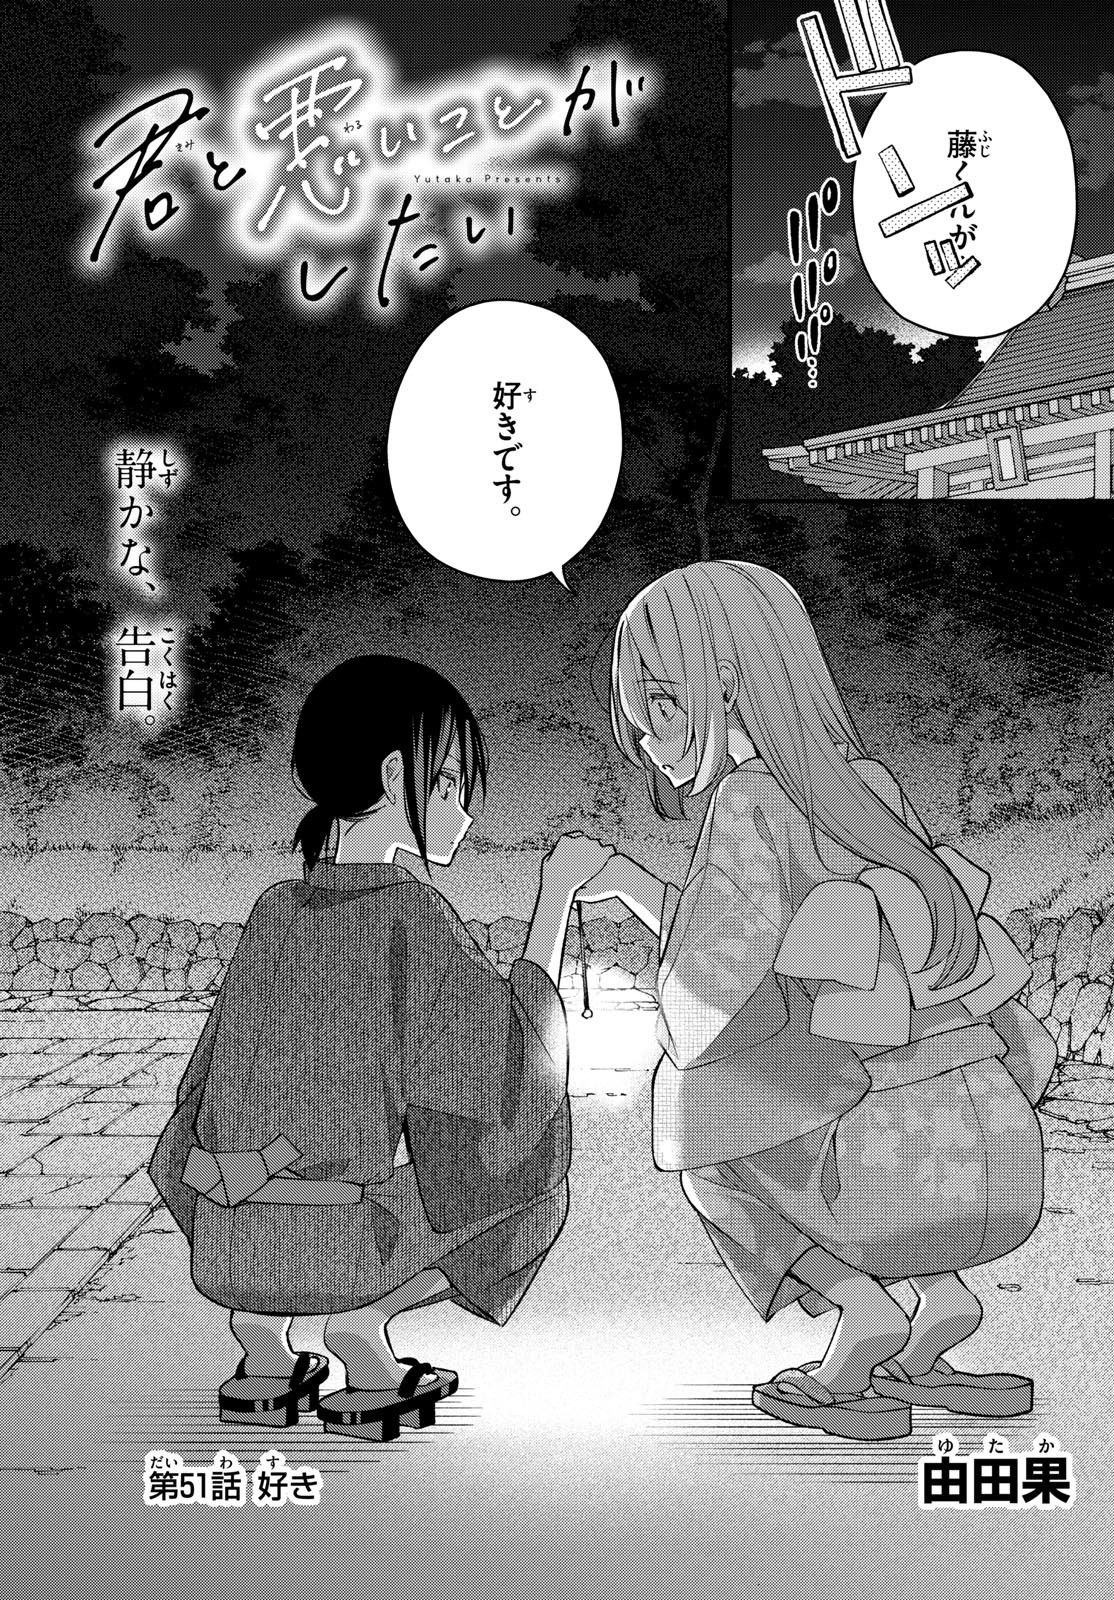 Kimi to Warui Koto ga Shitai - Chapter 051 - Page 1